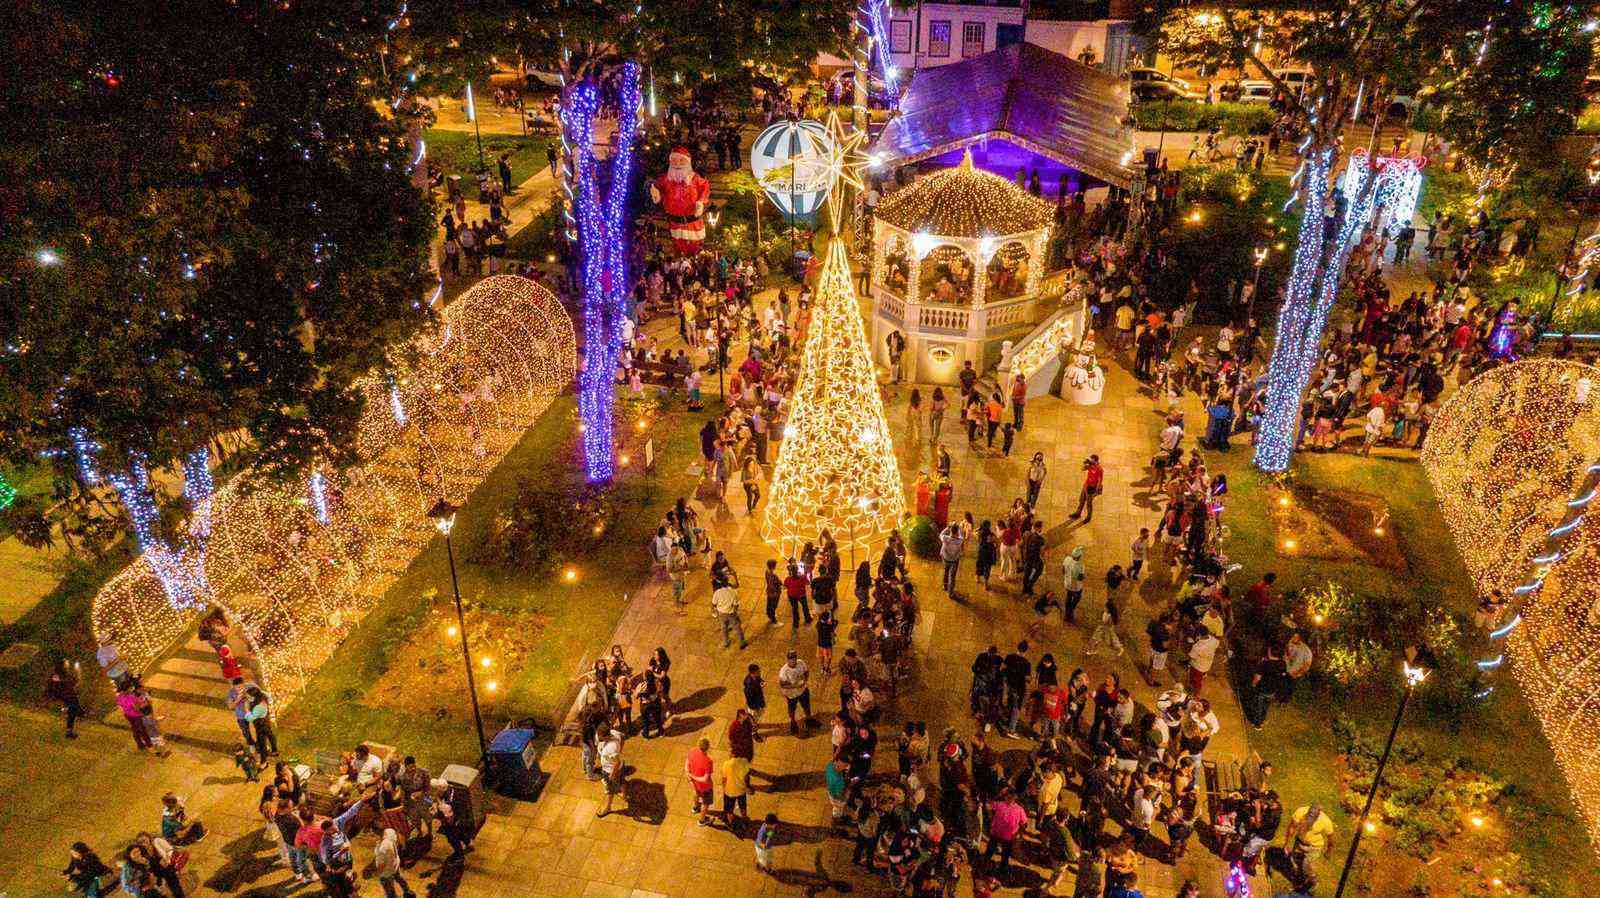 Repleta de atrações, prefeitura encerra 1ª edição do Natal dos